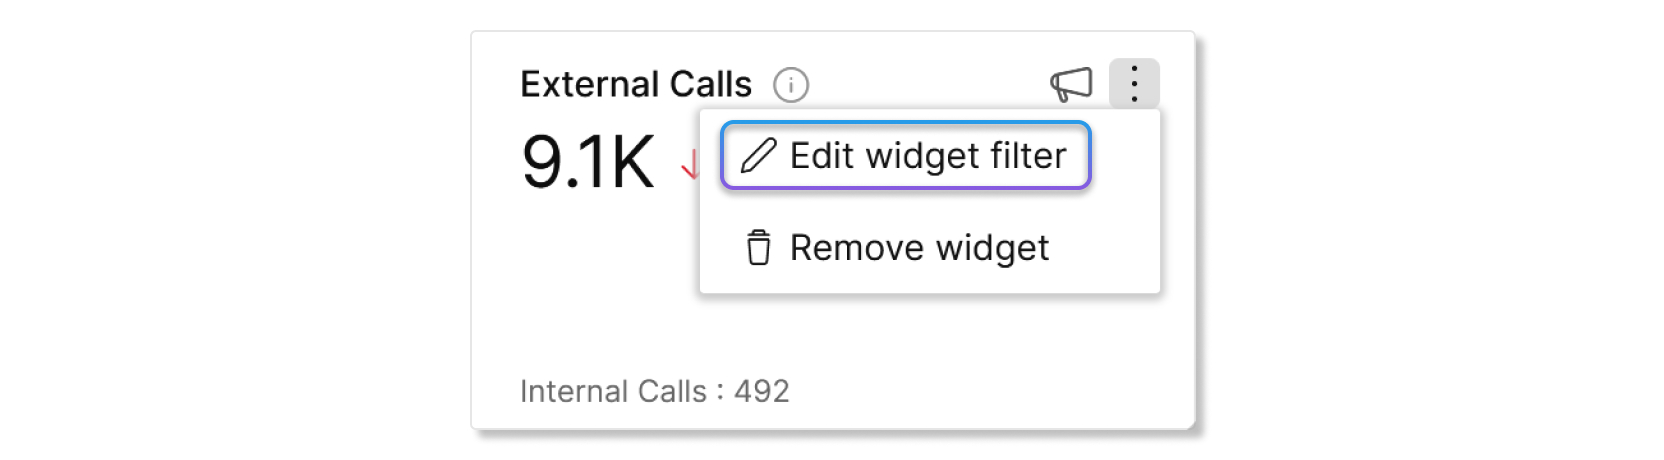 Modifier le bouton de filtre du widget sur un graphique dans le Control Hub